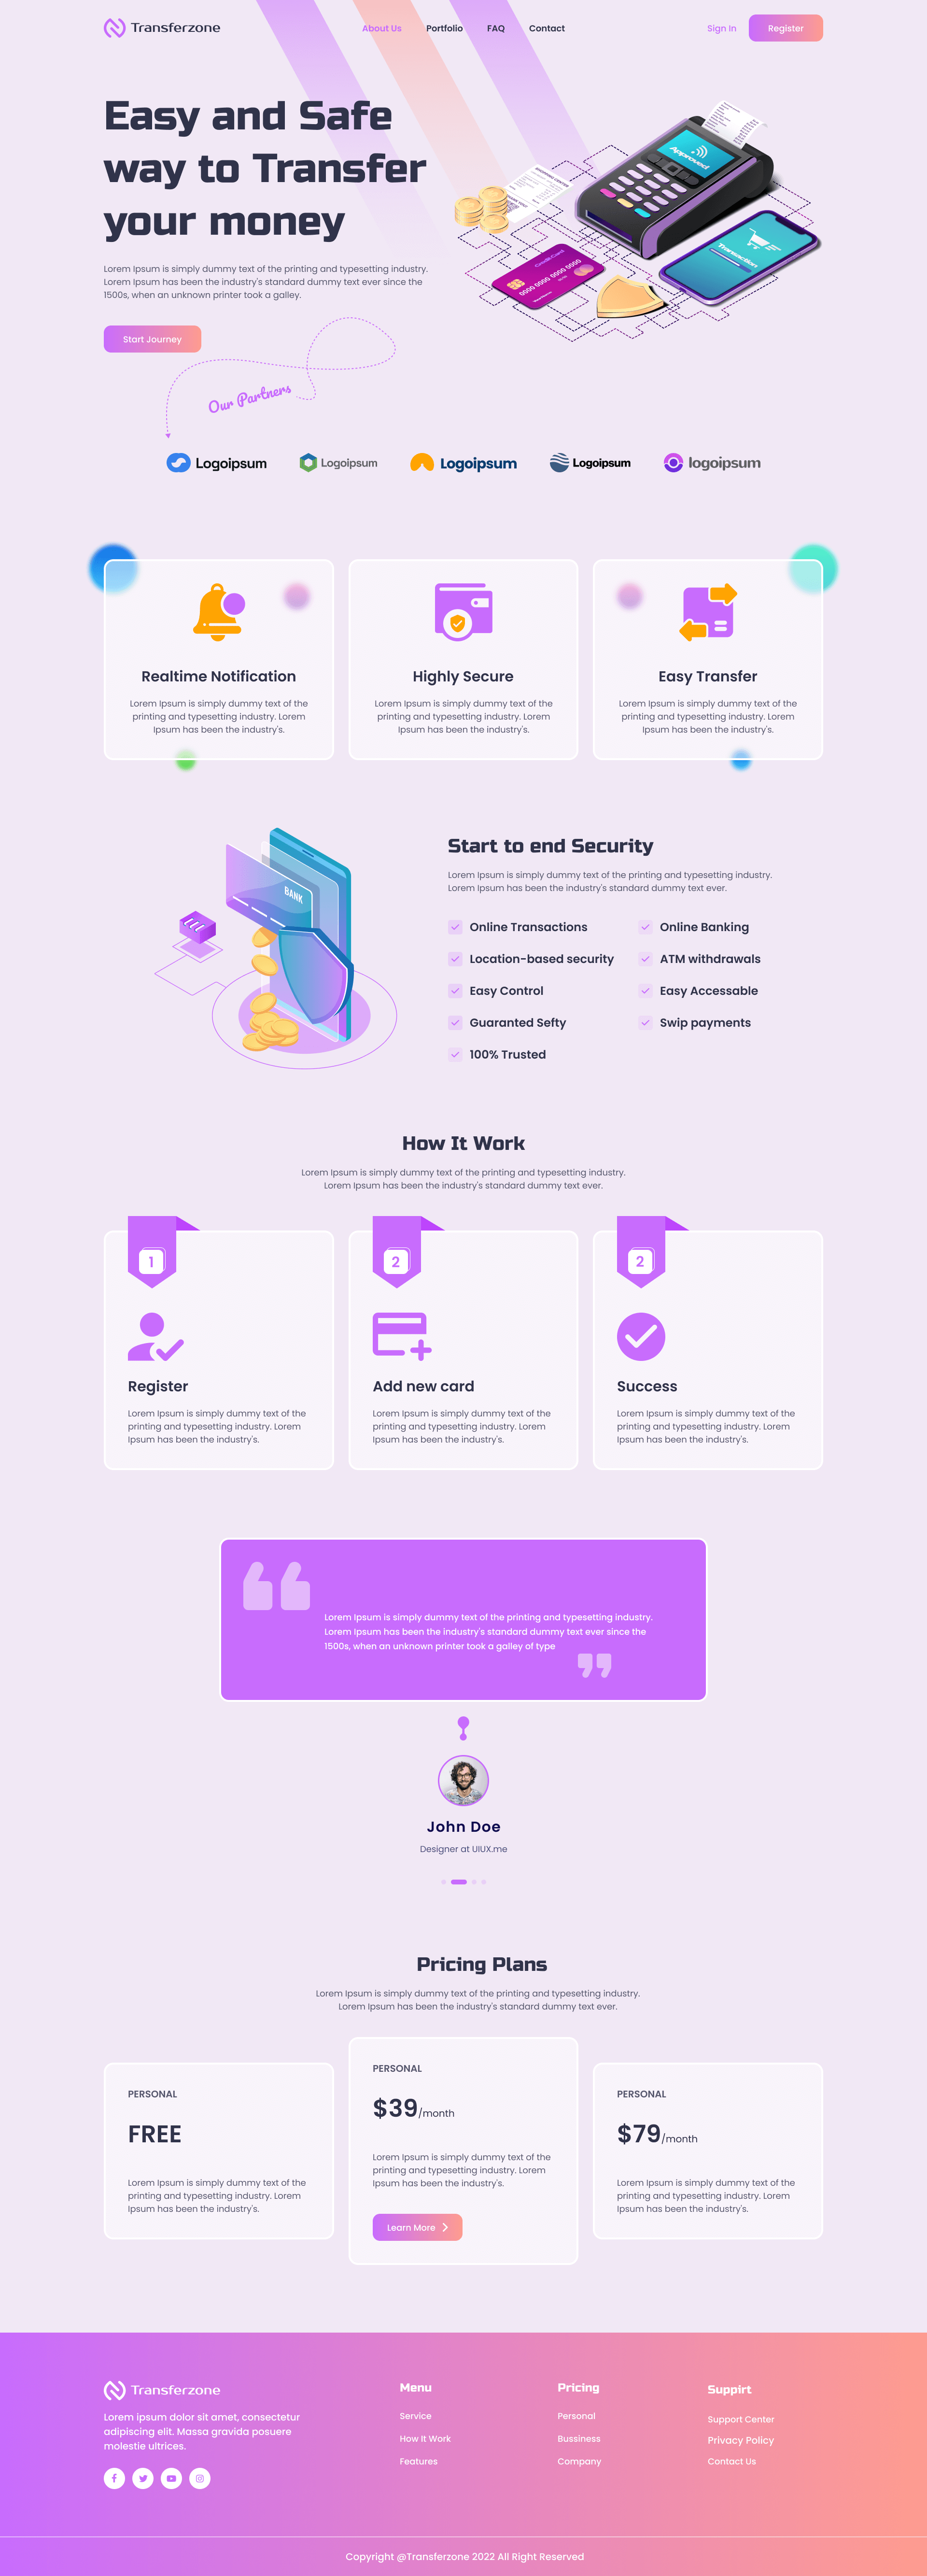 紫色系交易支付服务官网落地页Landing Page WEB UI界面设计 .fig素材